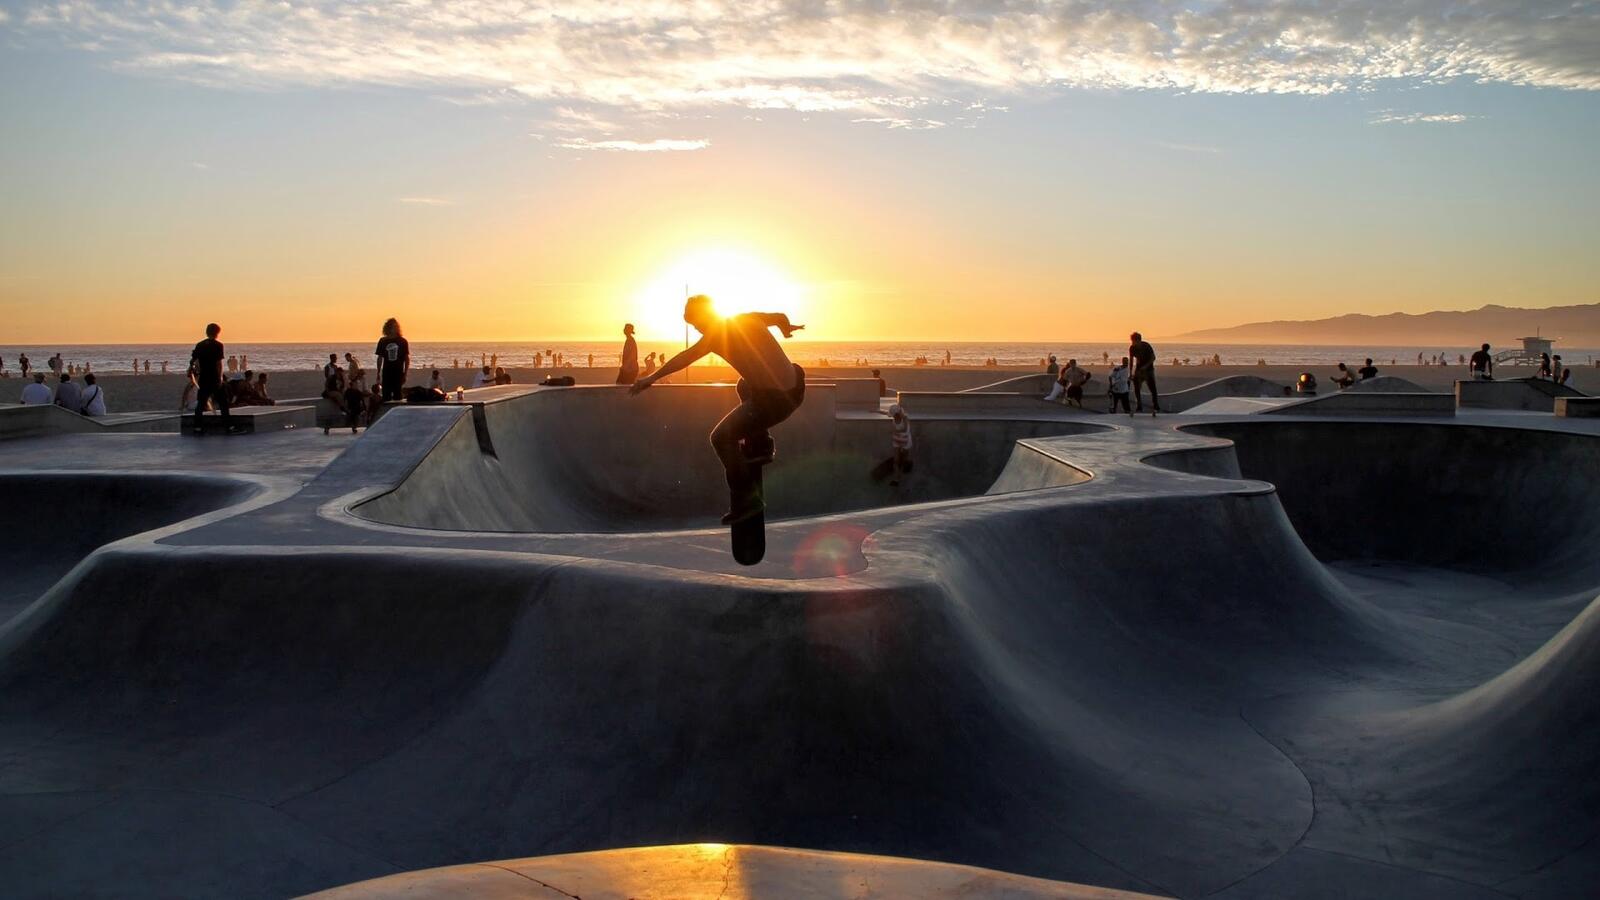 Wallpapers skateboarding sand dusk on the desktop